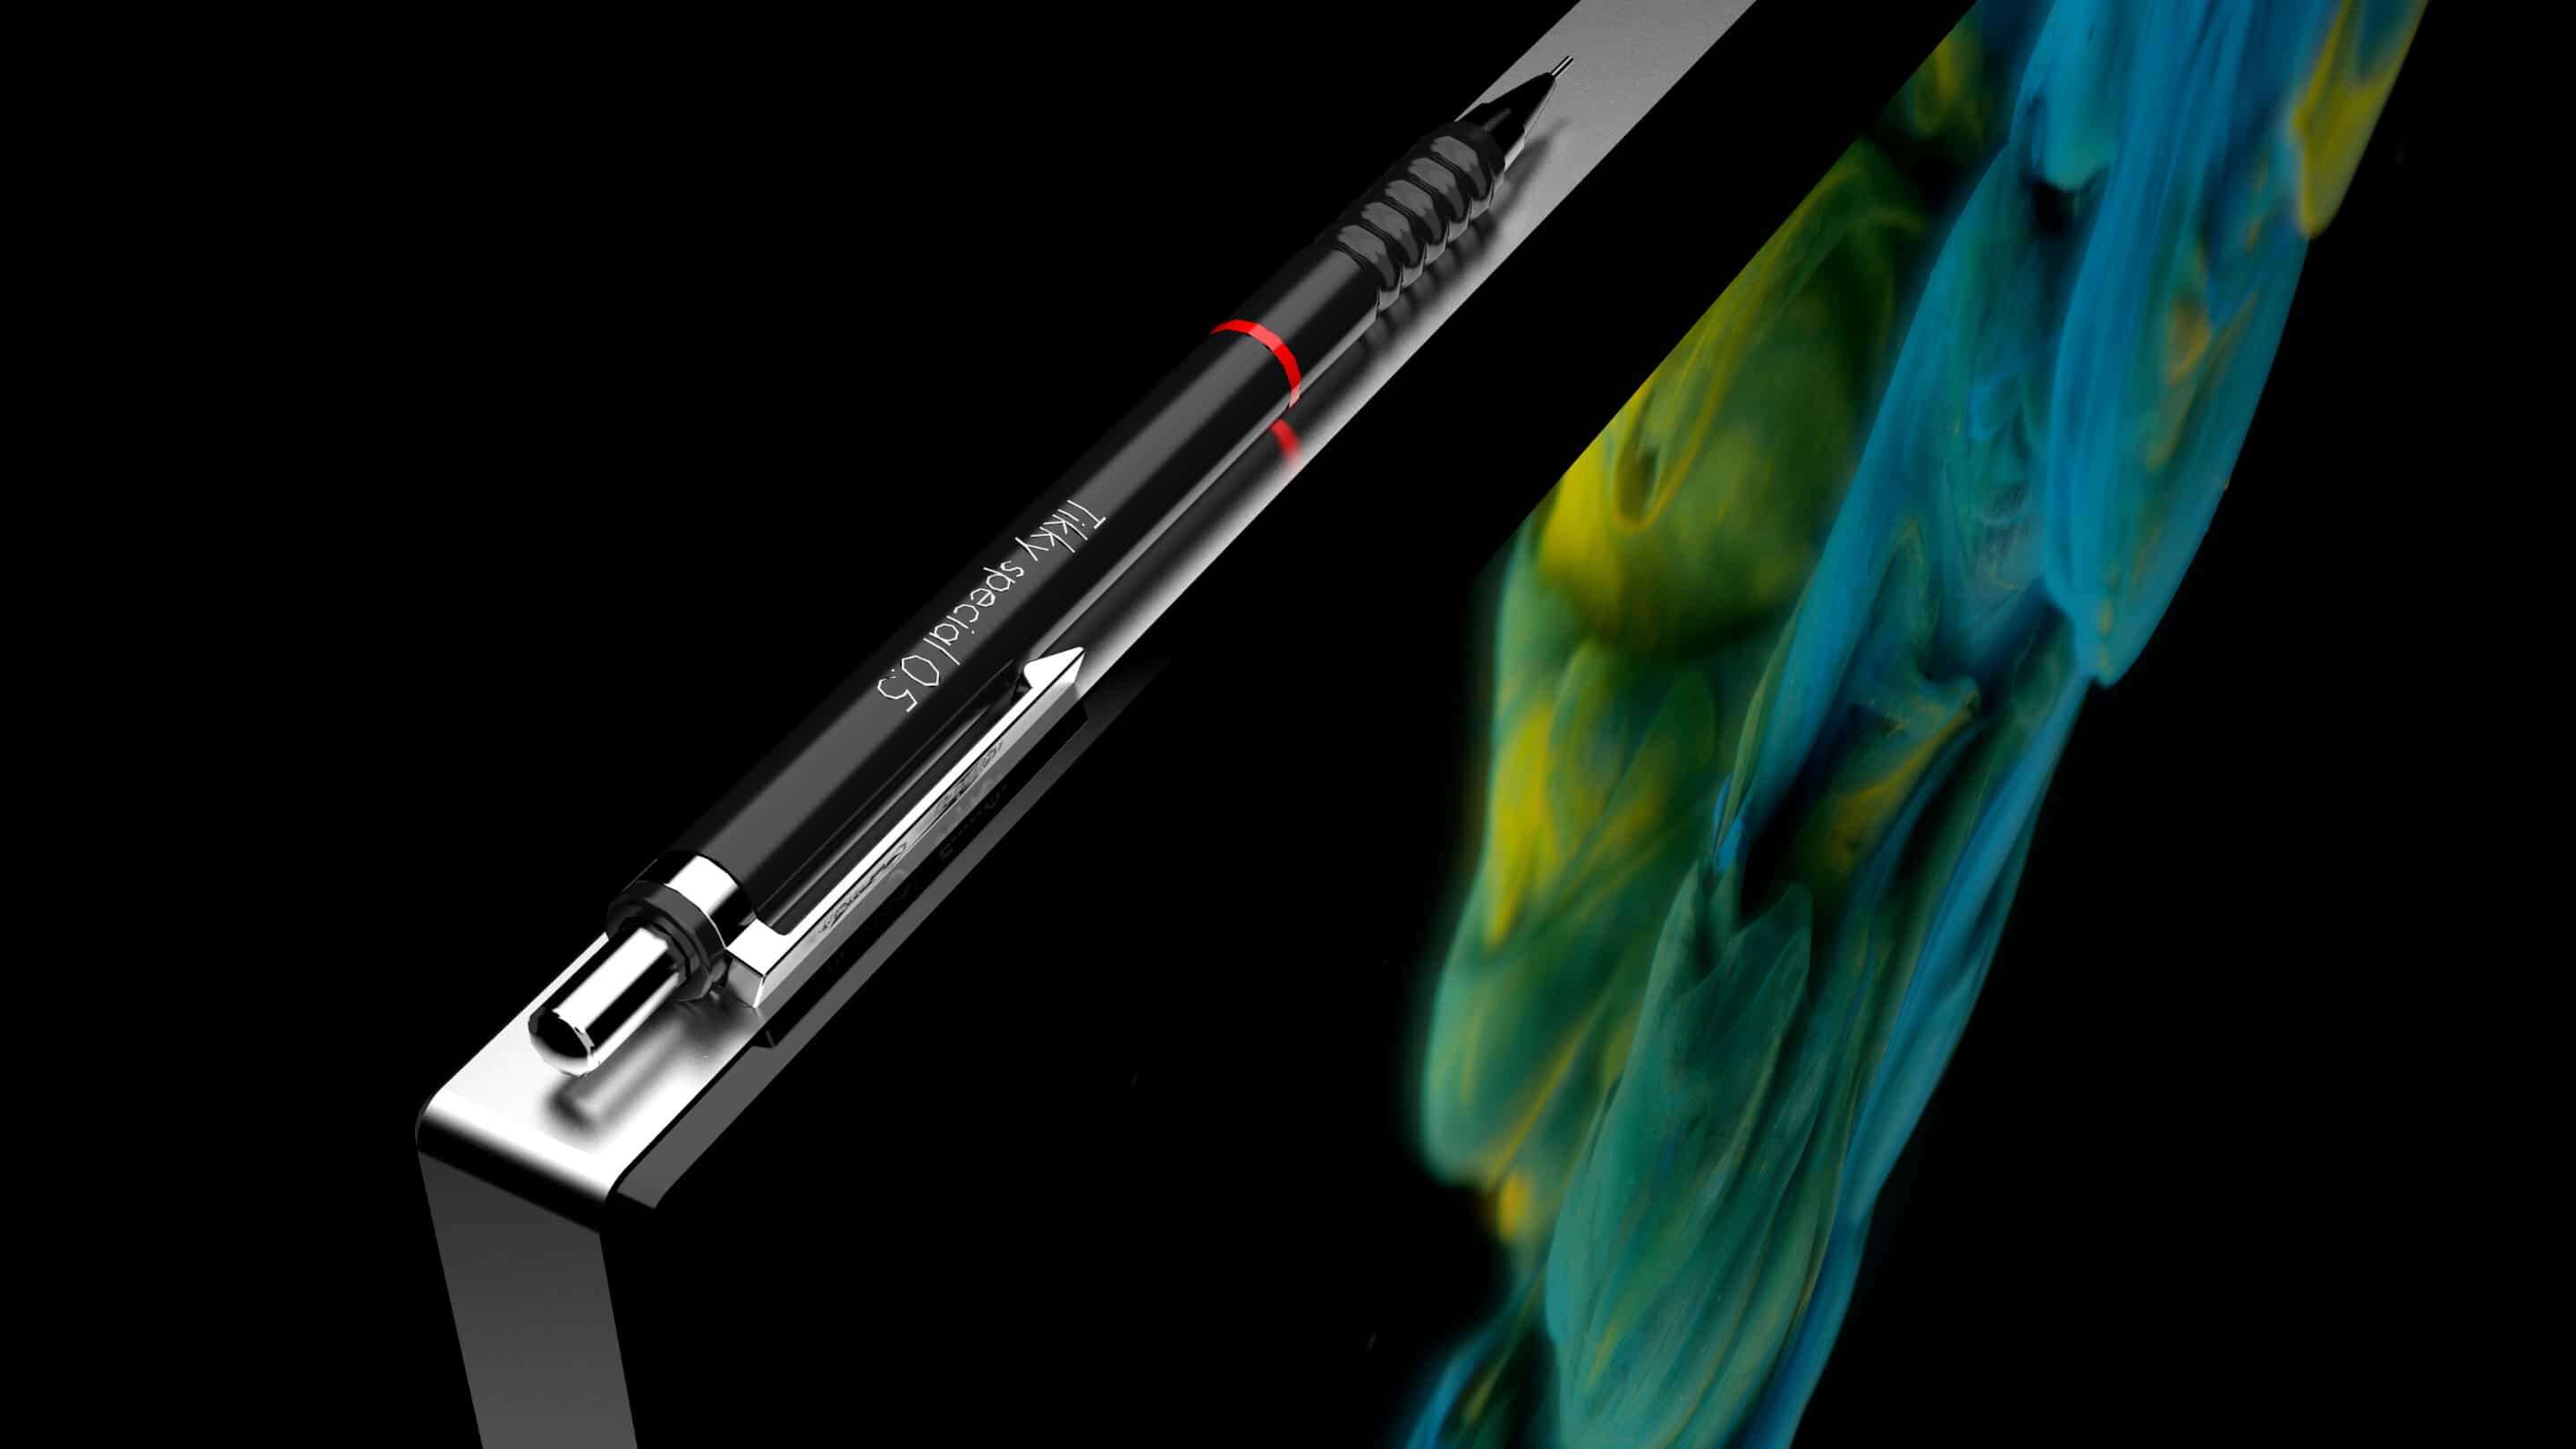 Màn hình công nghiệp - Màn hình công nghiệp 18mm một cây bút đen trên bề mặt màu đen